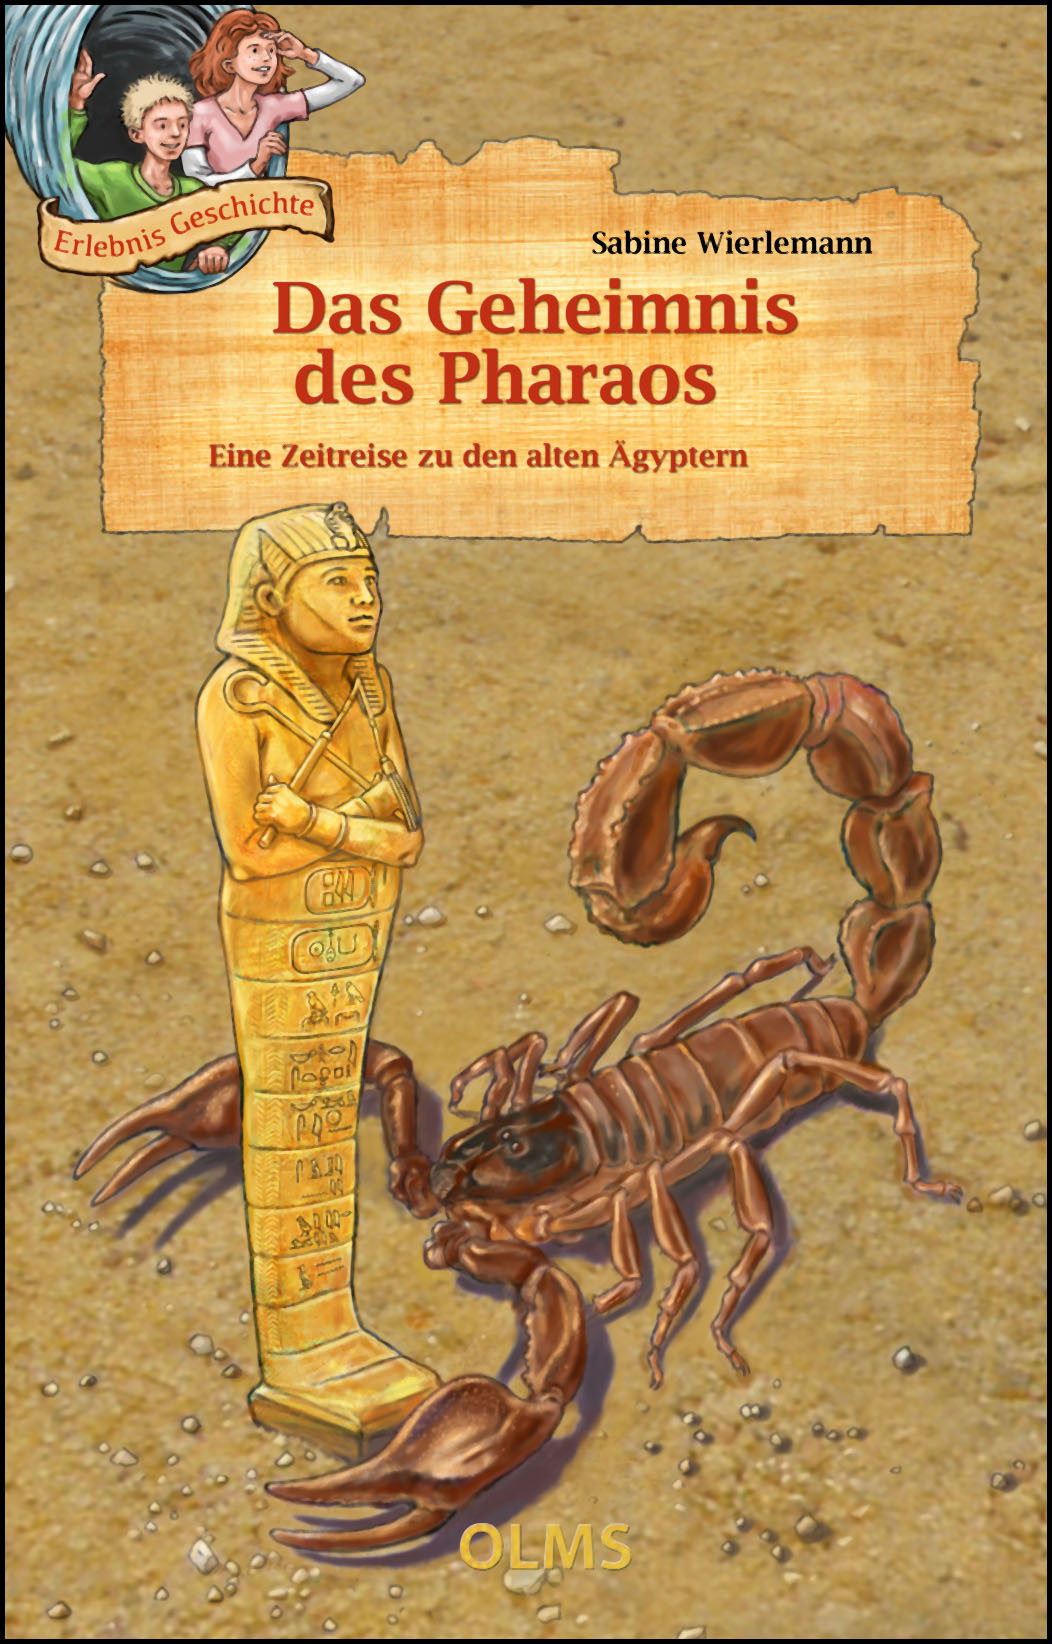 Das Geheimnis des Pharaos, Eine Zeitreise zu den alten Ägyptern. - Wierlemann, Sabine